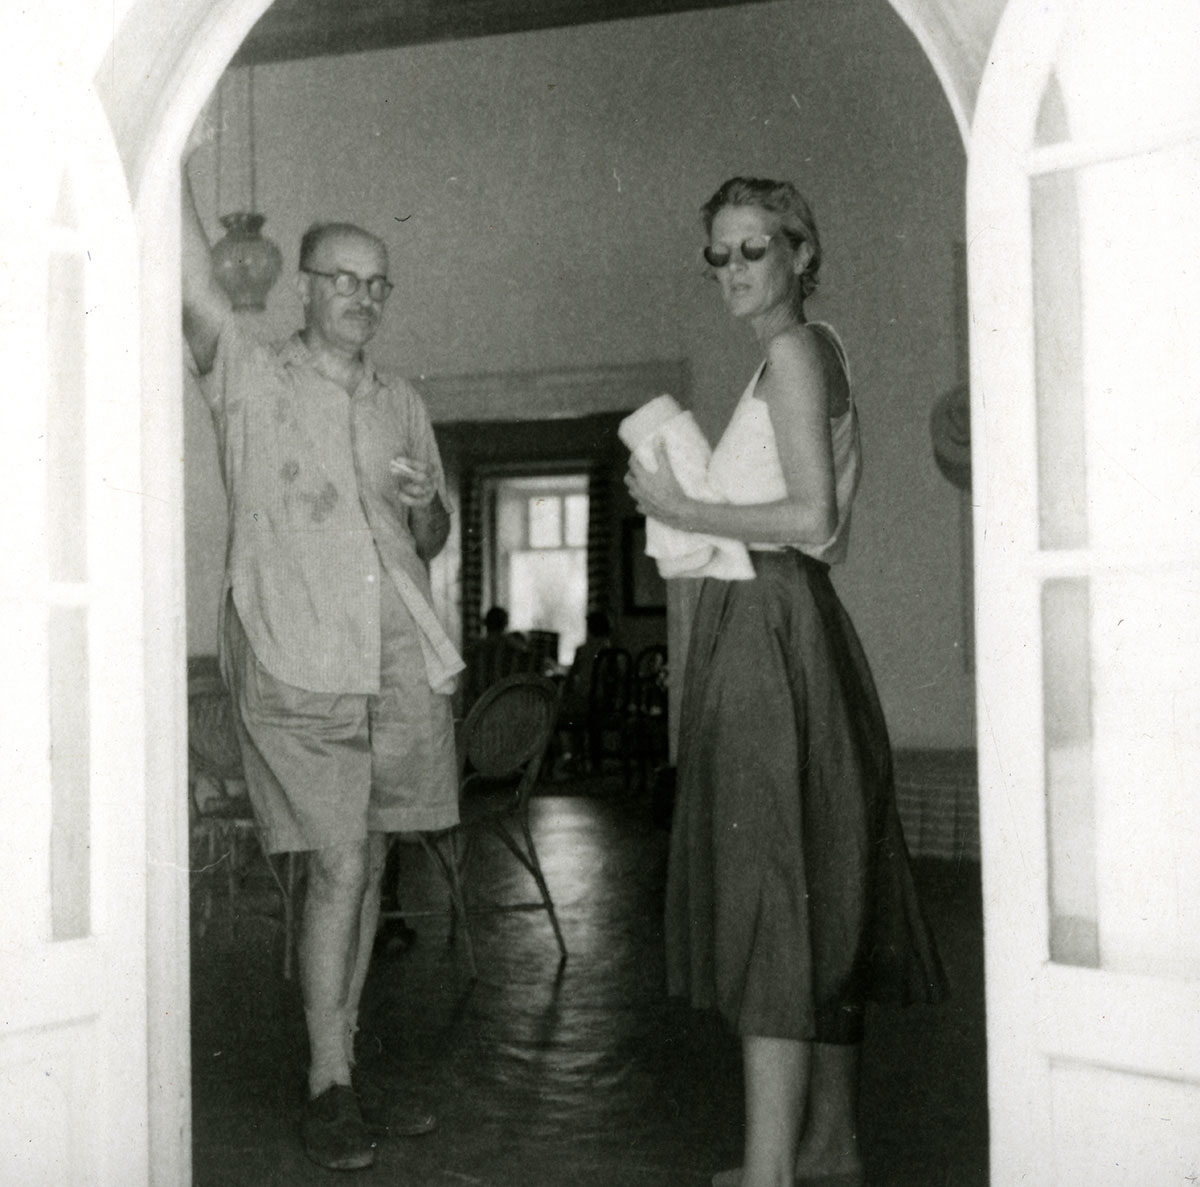 Ο Νίκος Χατζηκυριάκος-Γκίκας με την Joan Leigh Fermor στην Ύδρα, 1955. © Μουσείο Μπενάκη / Πινακοθήκη Γκίκα, Φωτογραφικά Αρχεία.